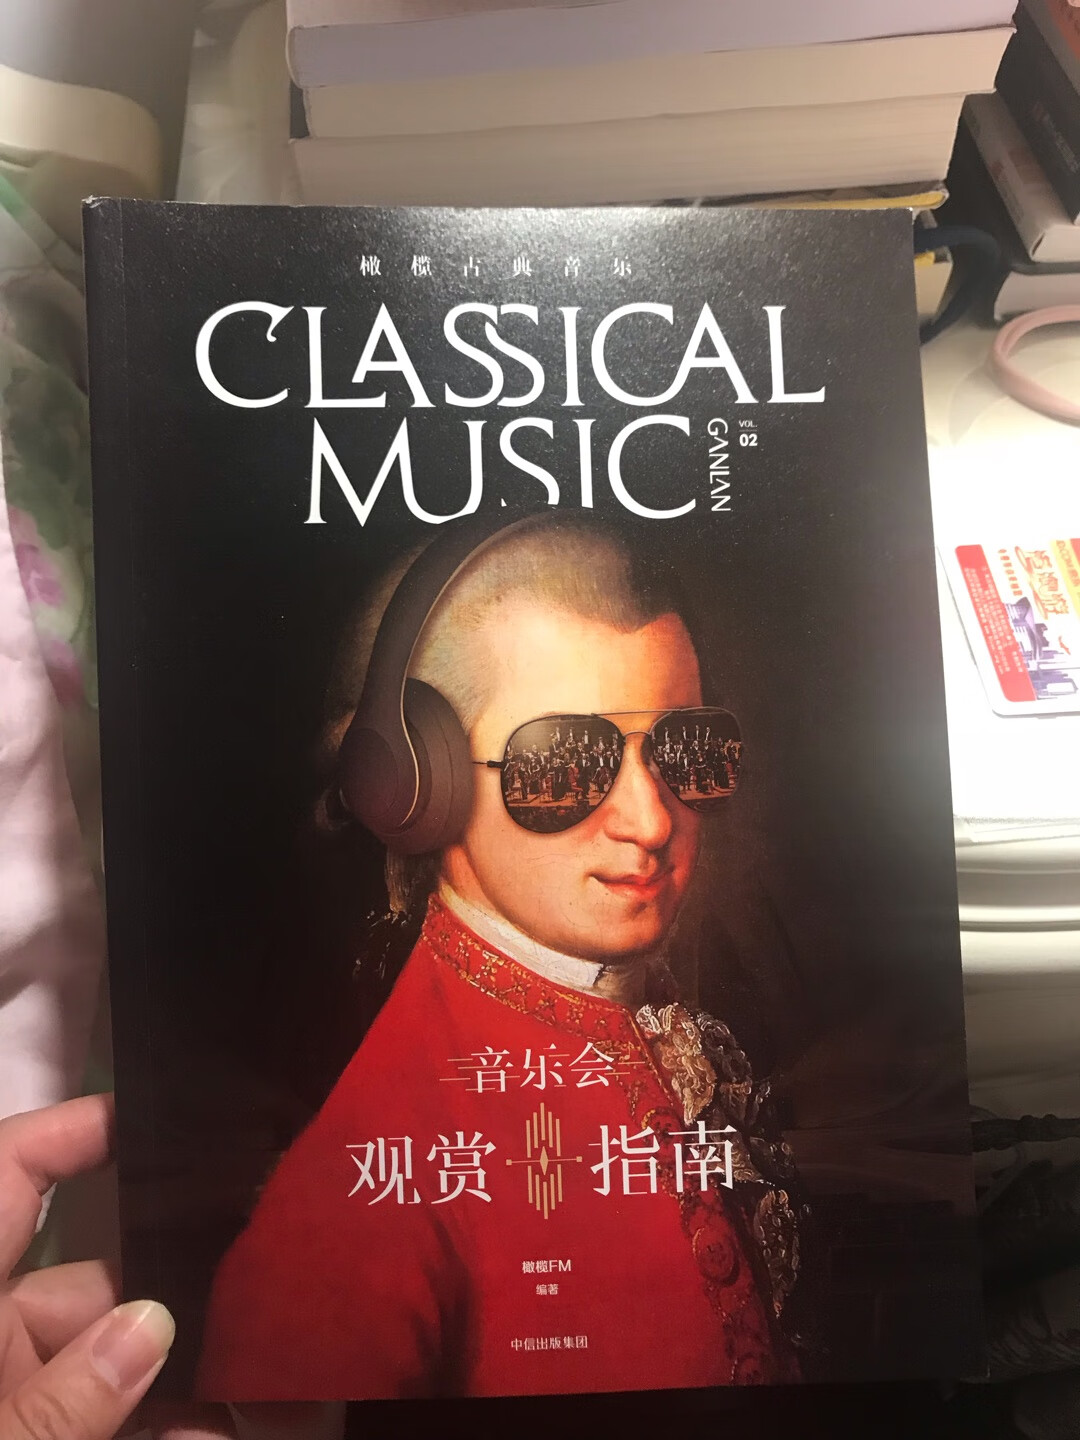 试着买了本橄榄古典音乐的书，内容还是很丰富的。